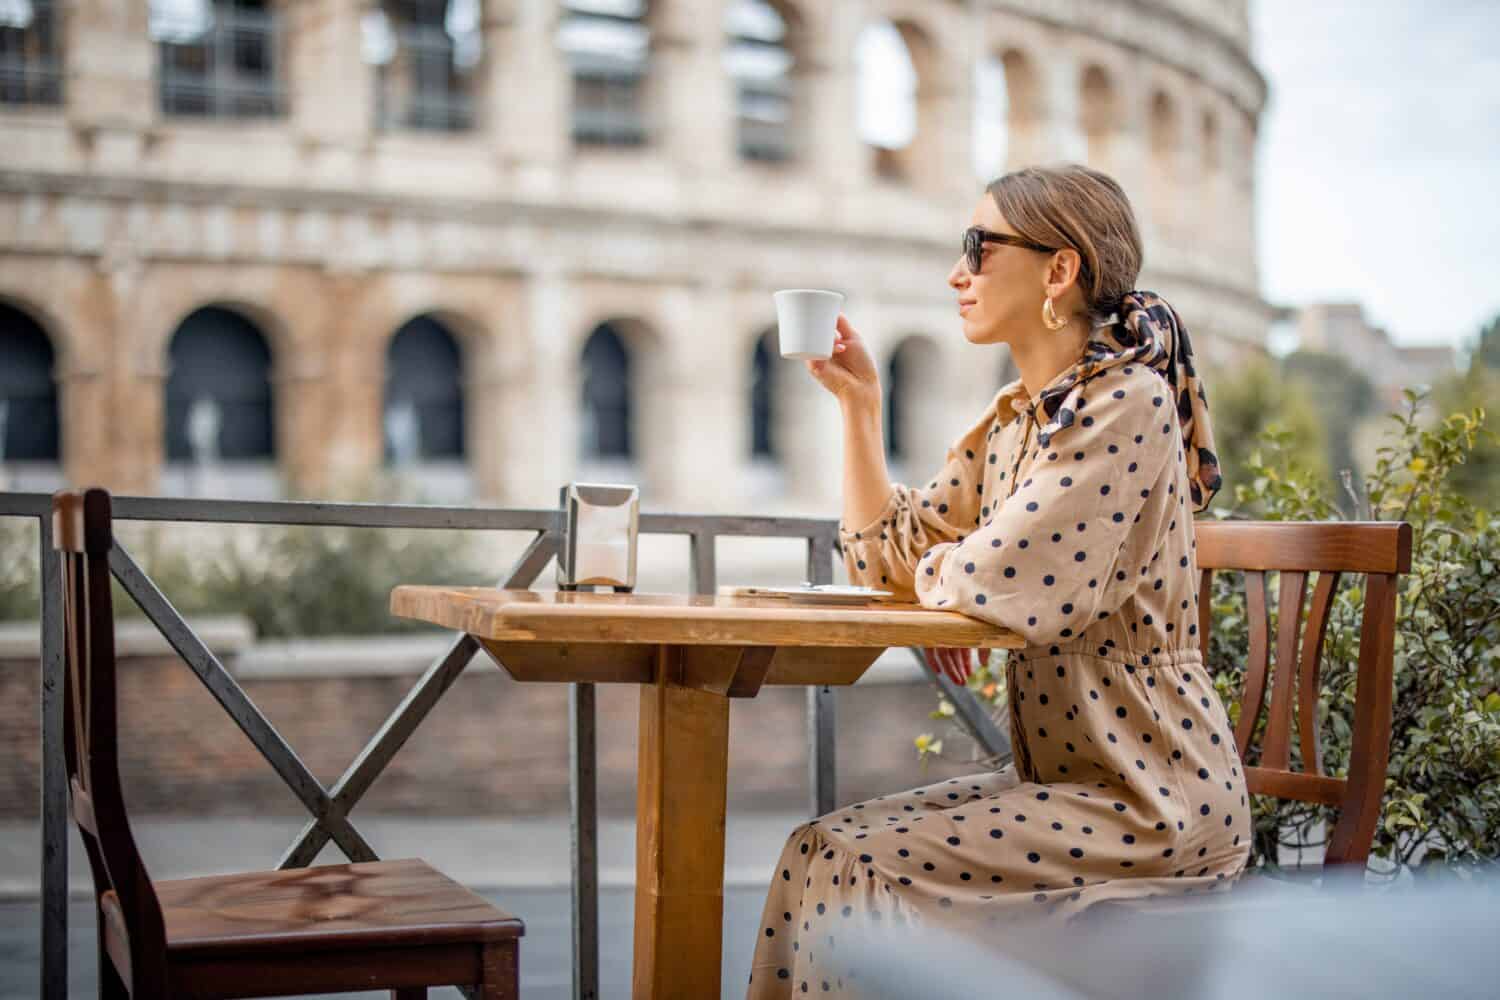 Donna che beve caffè al caffè all'aperto vicino al Colosseo, il punto di riferimento più famoso di Roma.  Concetto di stile di vita italiano e viaggio in Italia.  Donna caucasica che indossa abito e scialle nei capelli